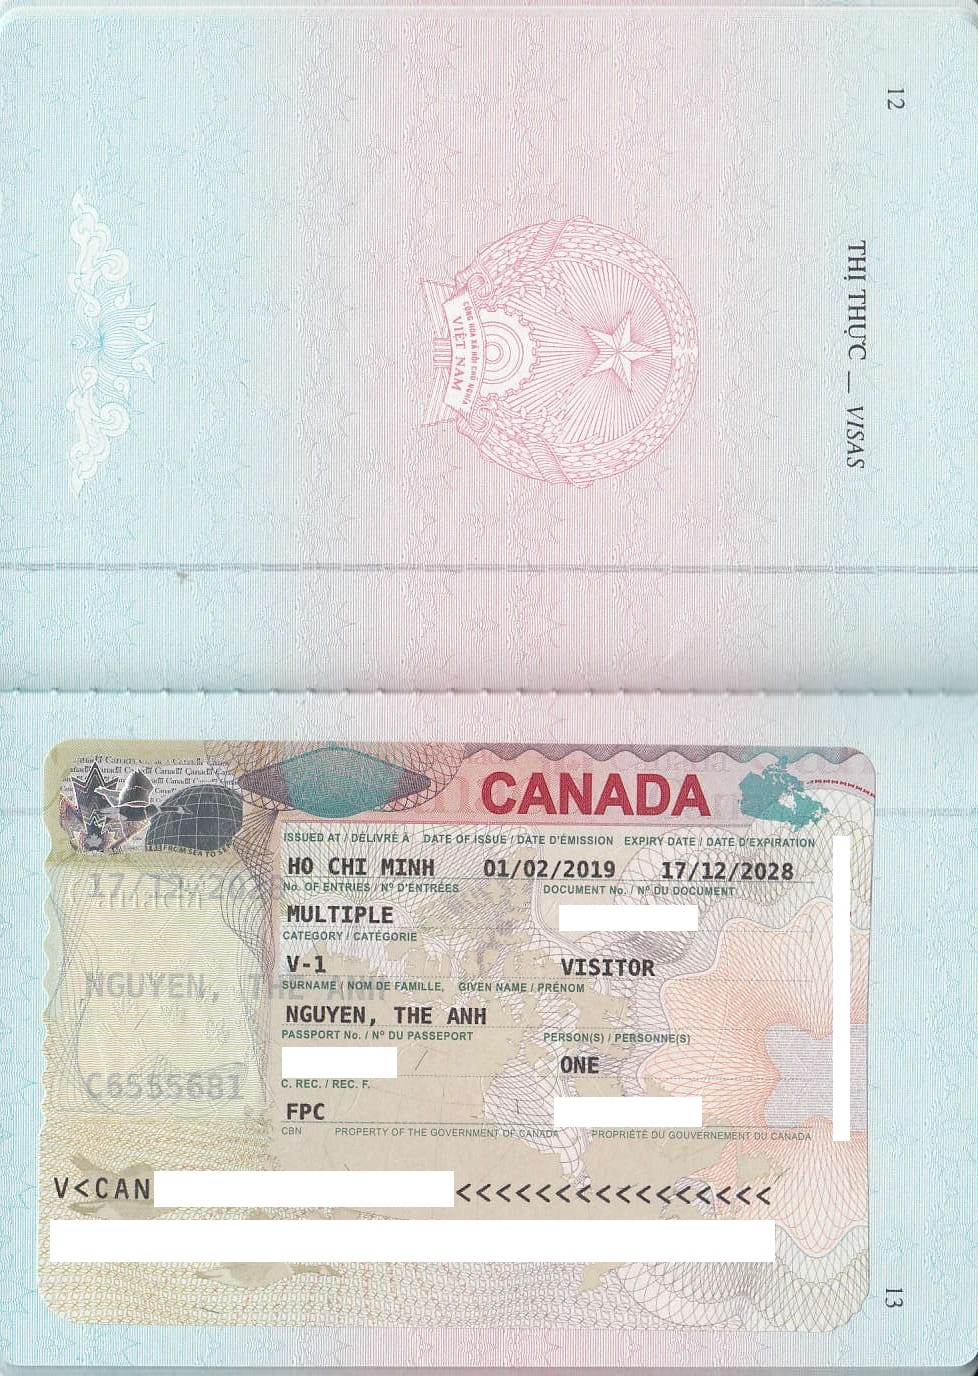 Visa du lịch thăm thân Canada: Sunshine Vietnam xin chúc mừng Anh Nguyễn Thế Anh và chị Phạm Thị Vi ở Ân Thi – Hưng Yên đã được cấp Visa du lịch thăm thân CANADA.